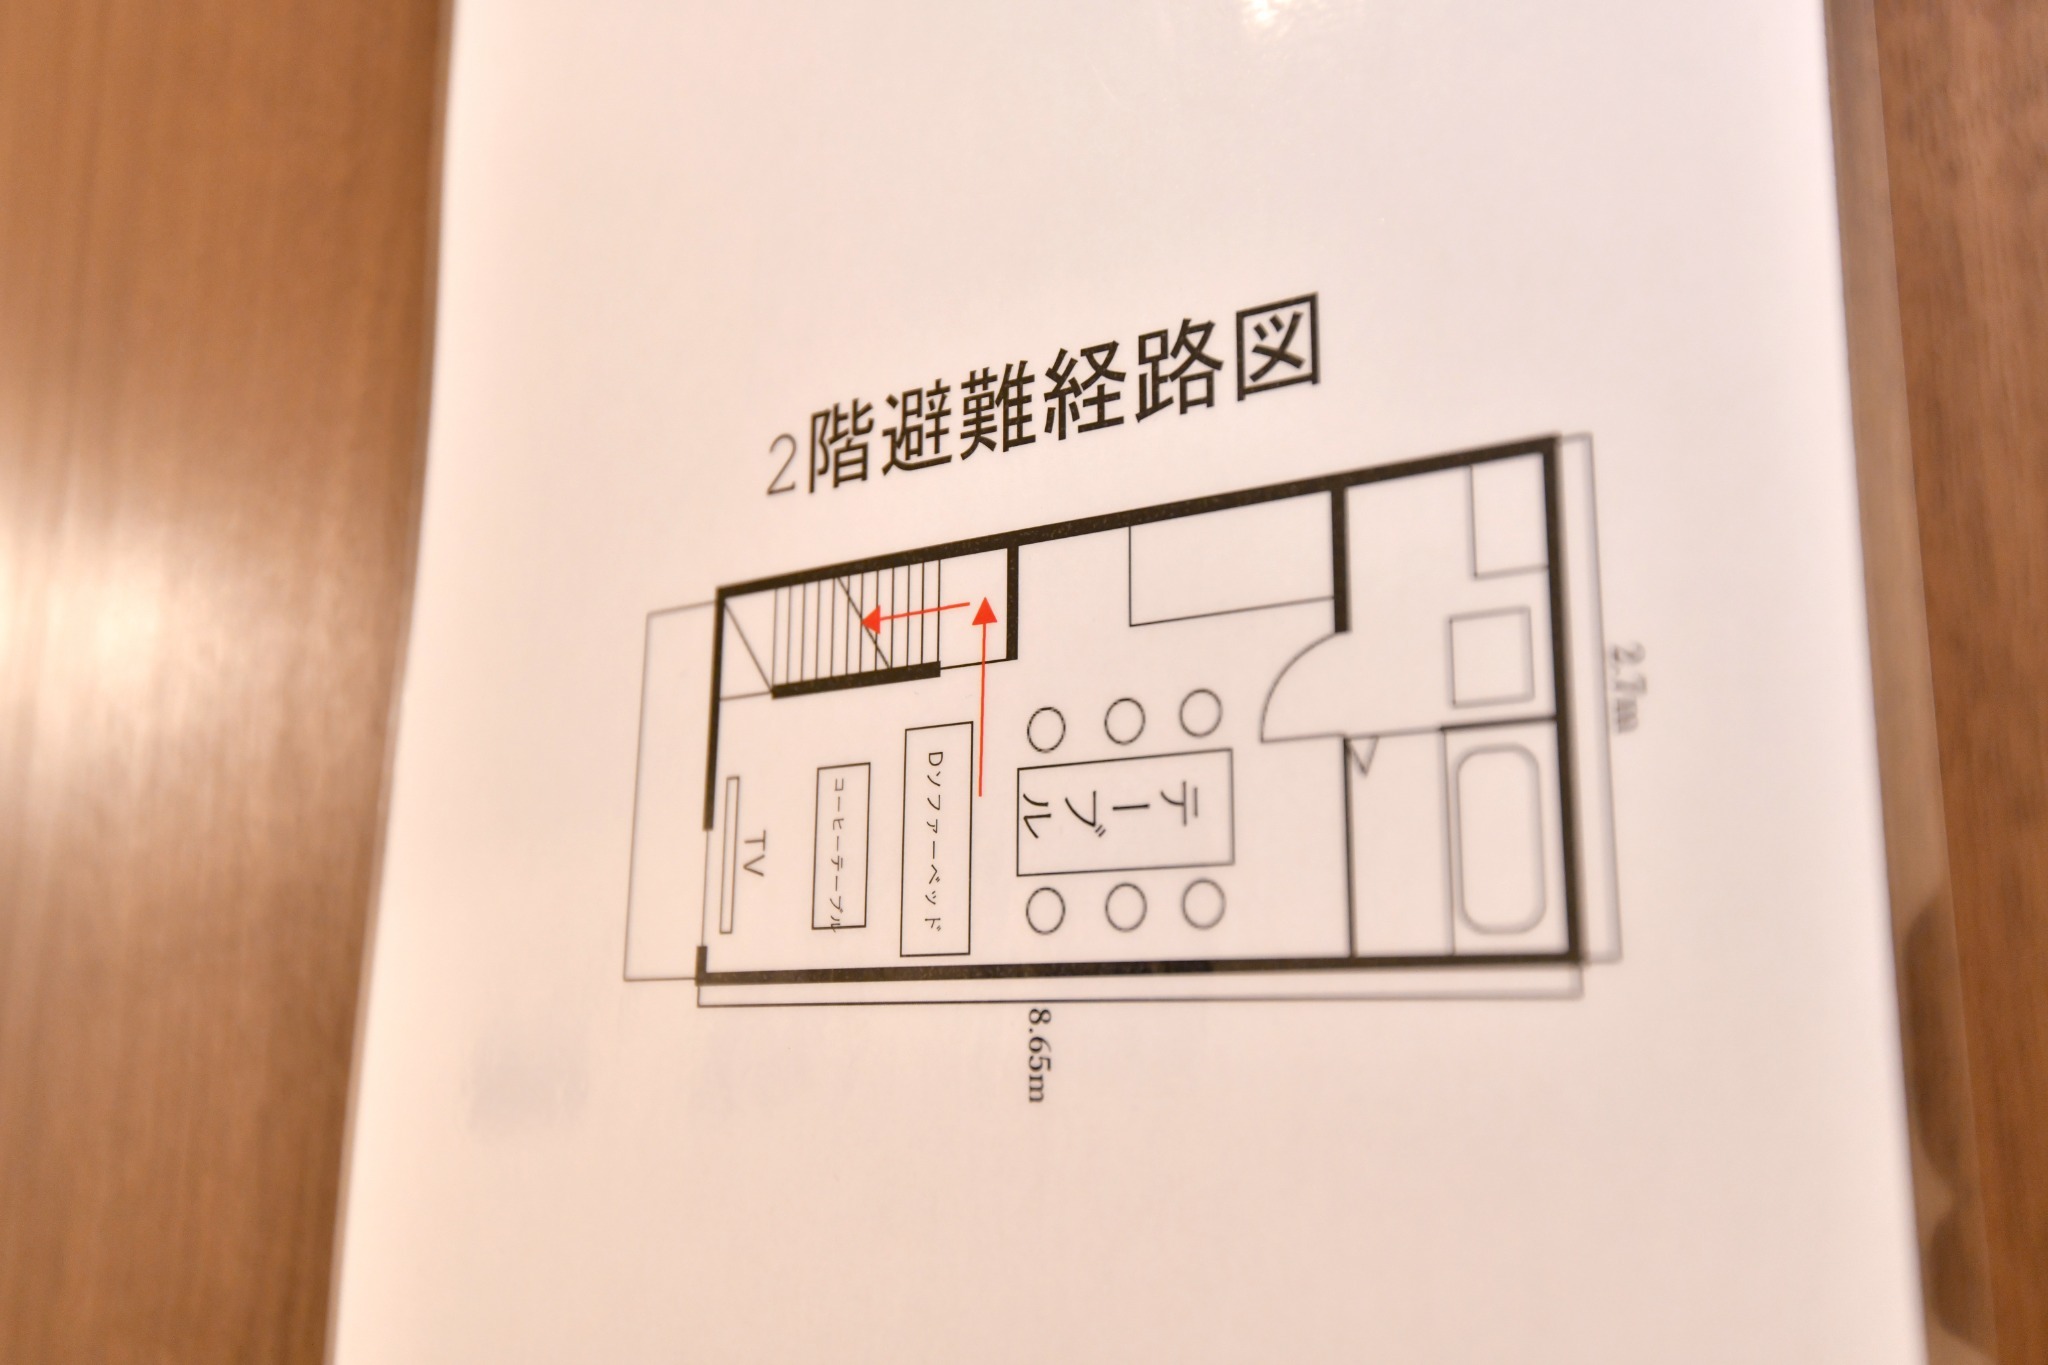 大阪の中心部!新今宮駅、萩之茶屋駅の近くの3階戸建て丸ごと貸切り。